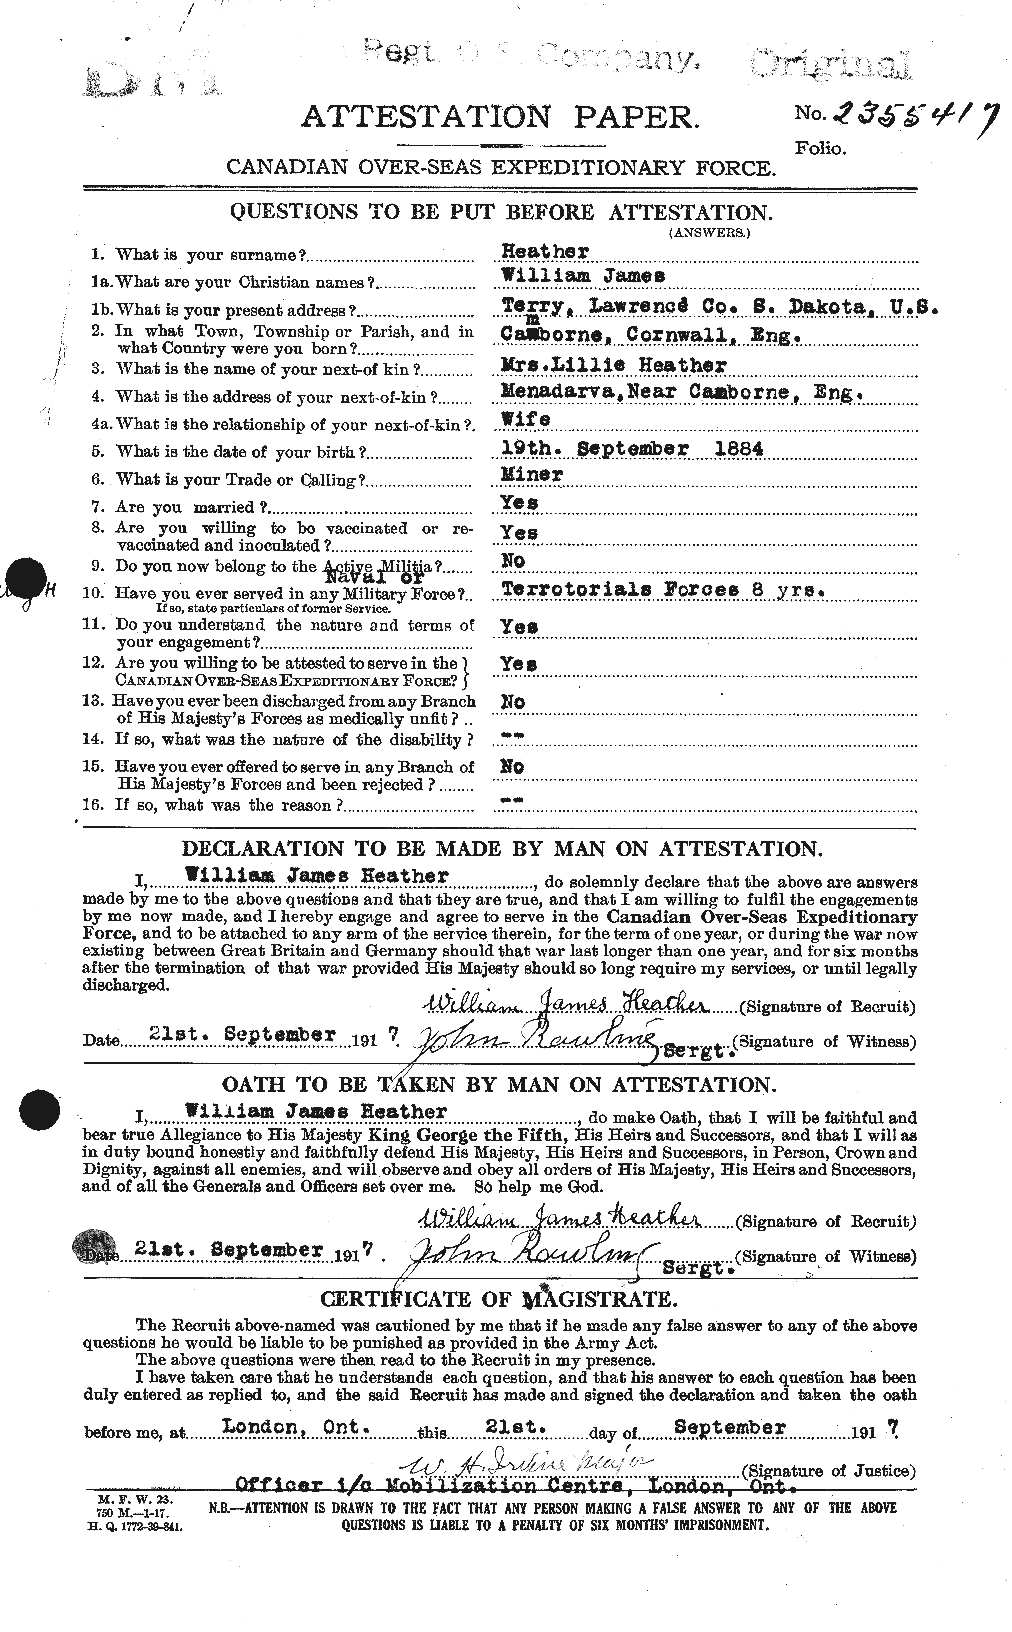 Dossiers du Personnel de la Première Guerre mondiale - CEC 386383a